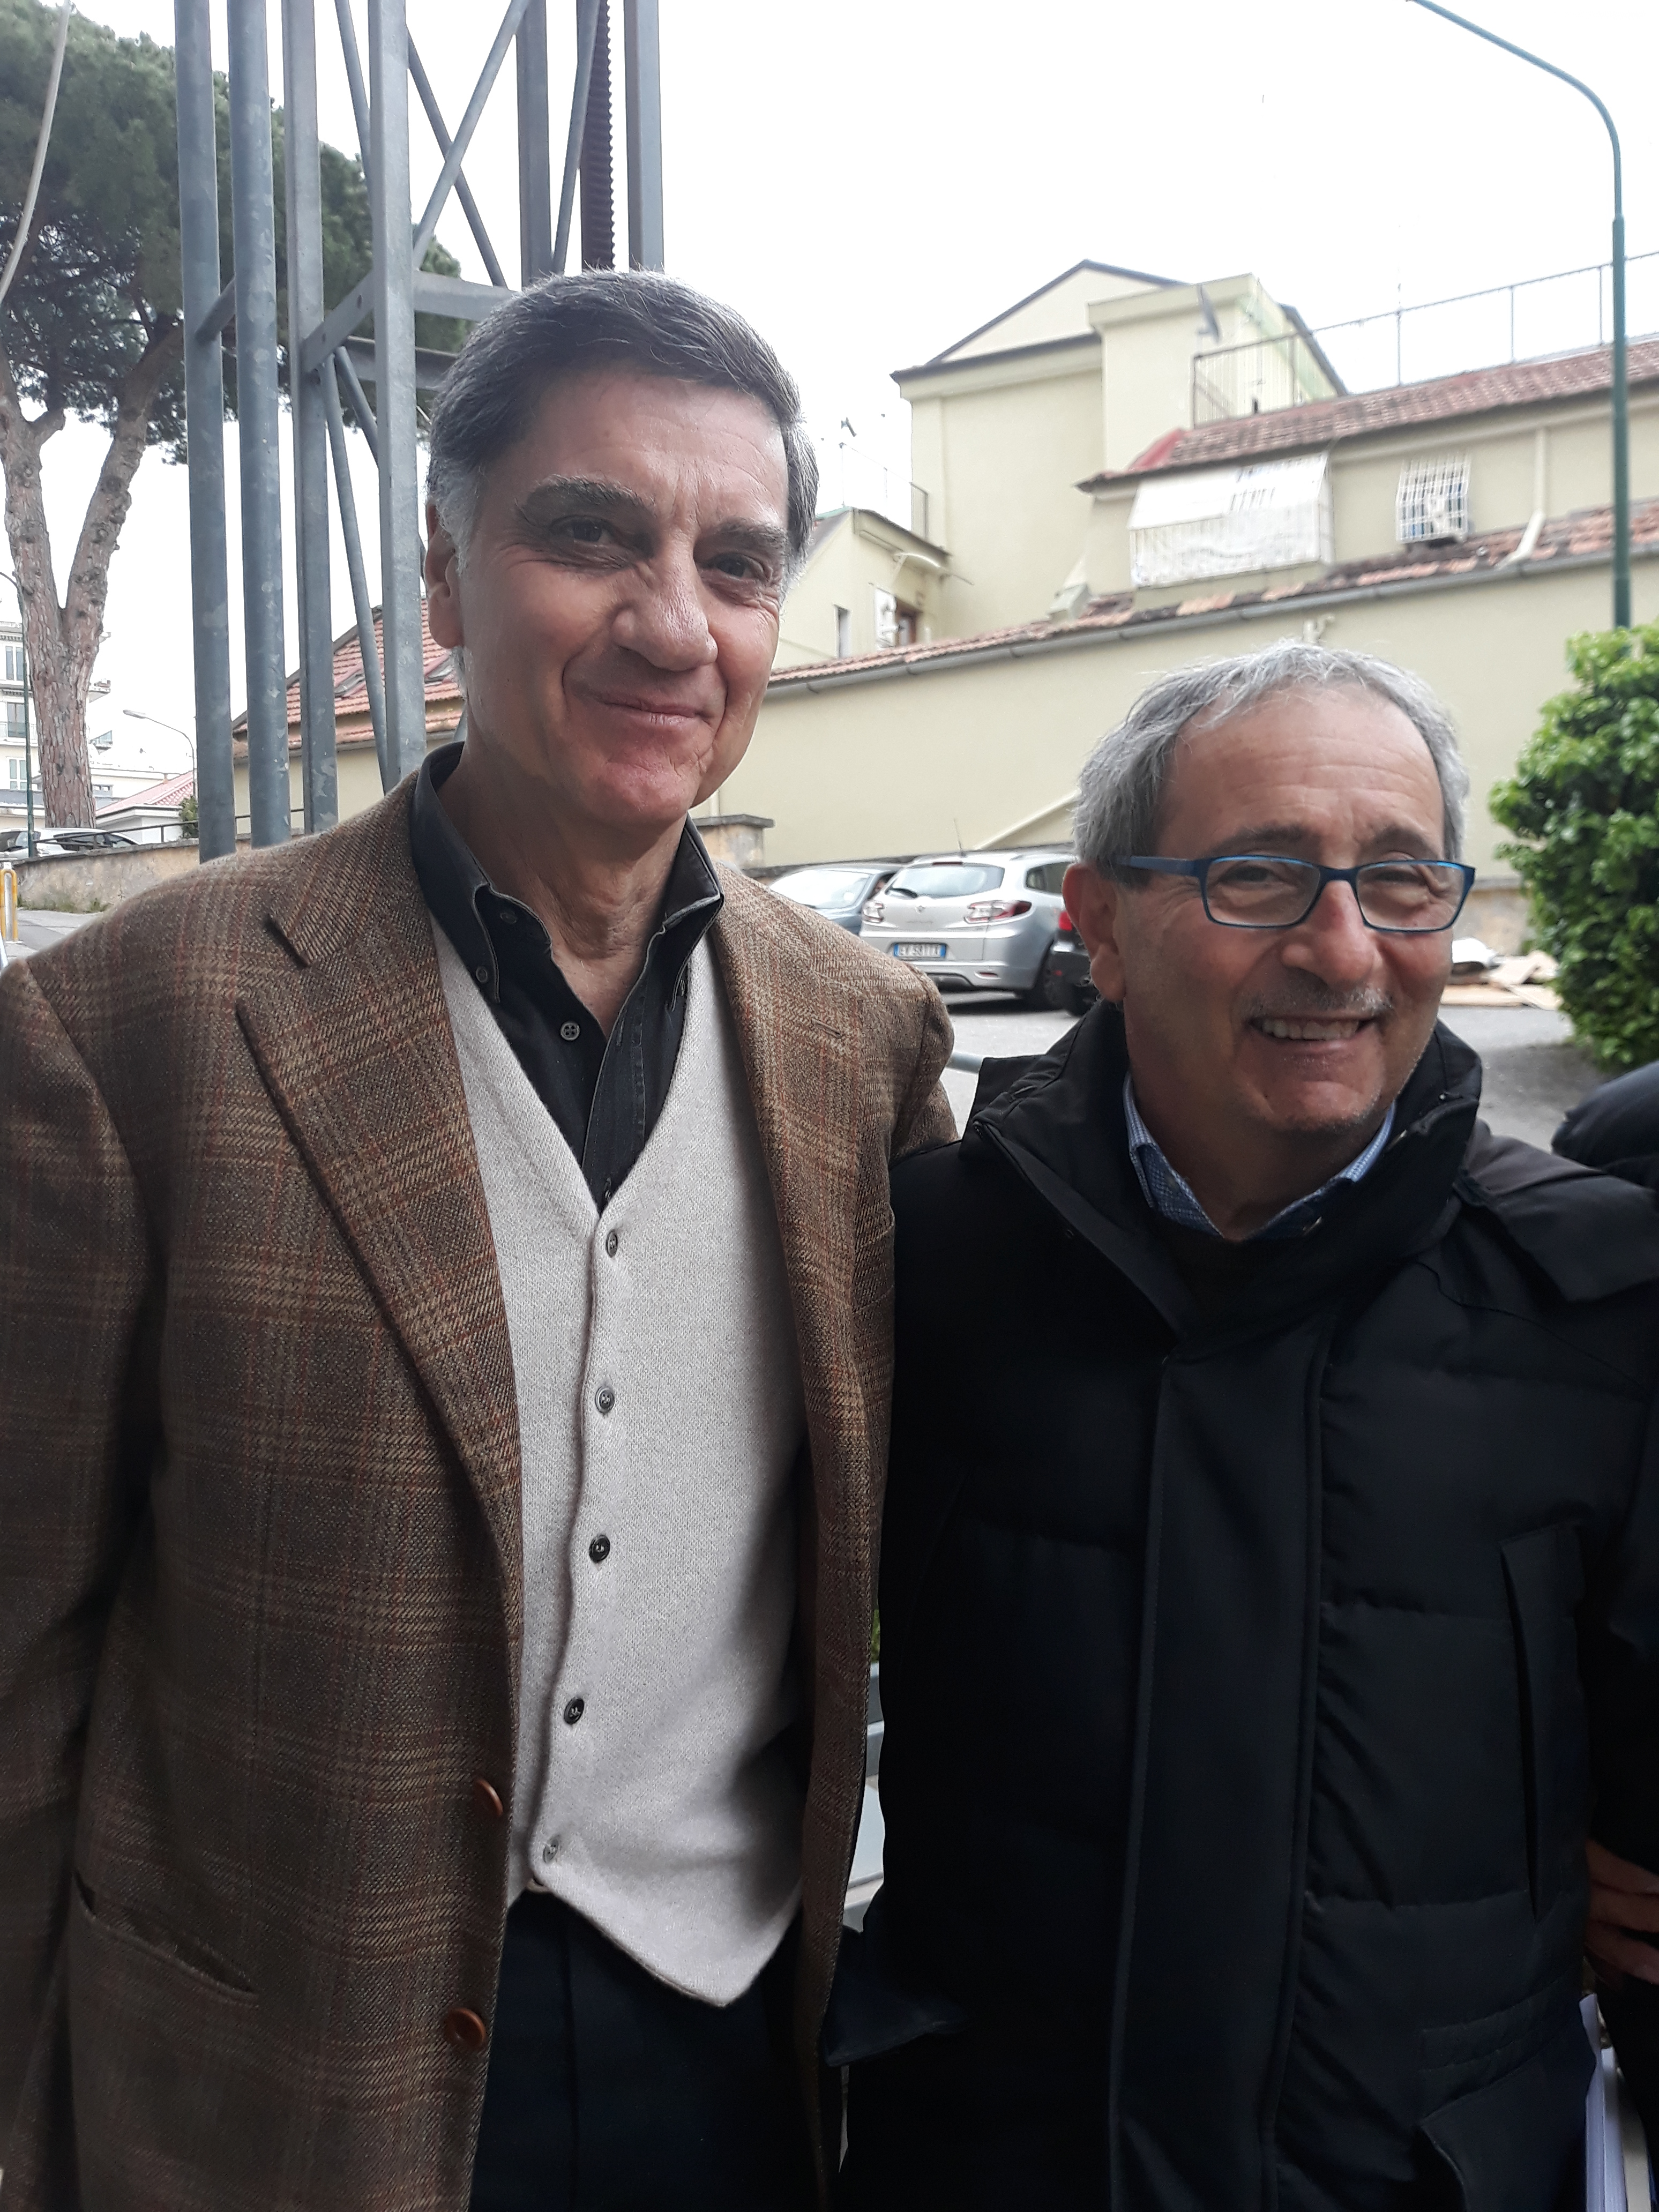 A Salerno grande accoglienza per Marco Tullio Barboni